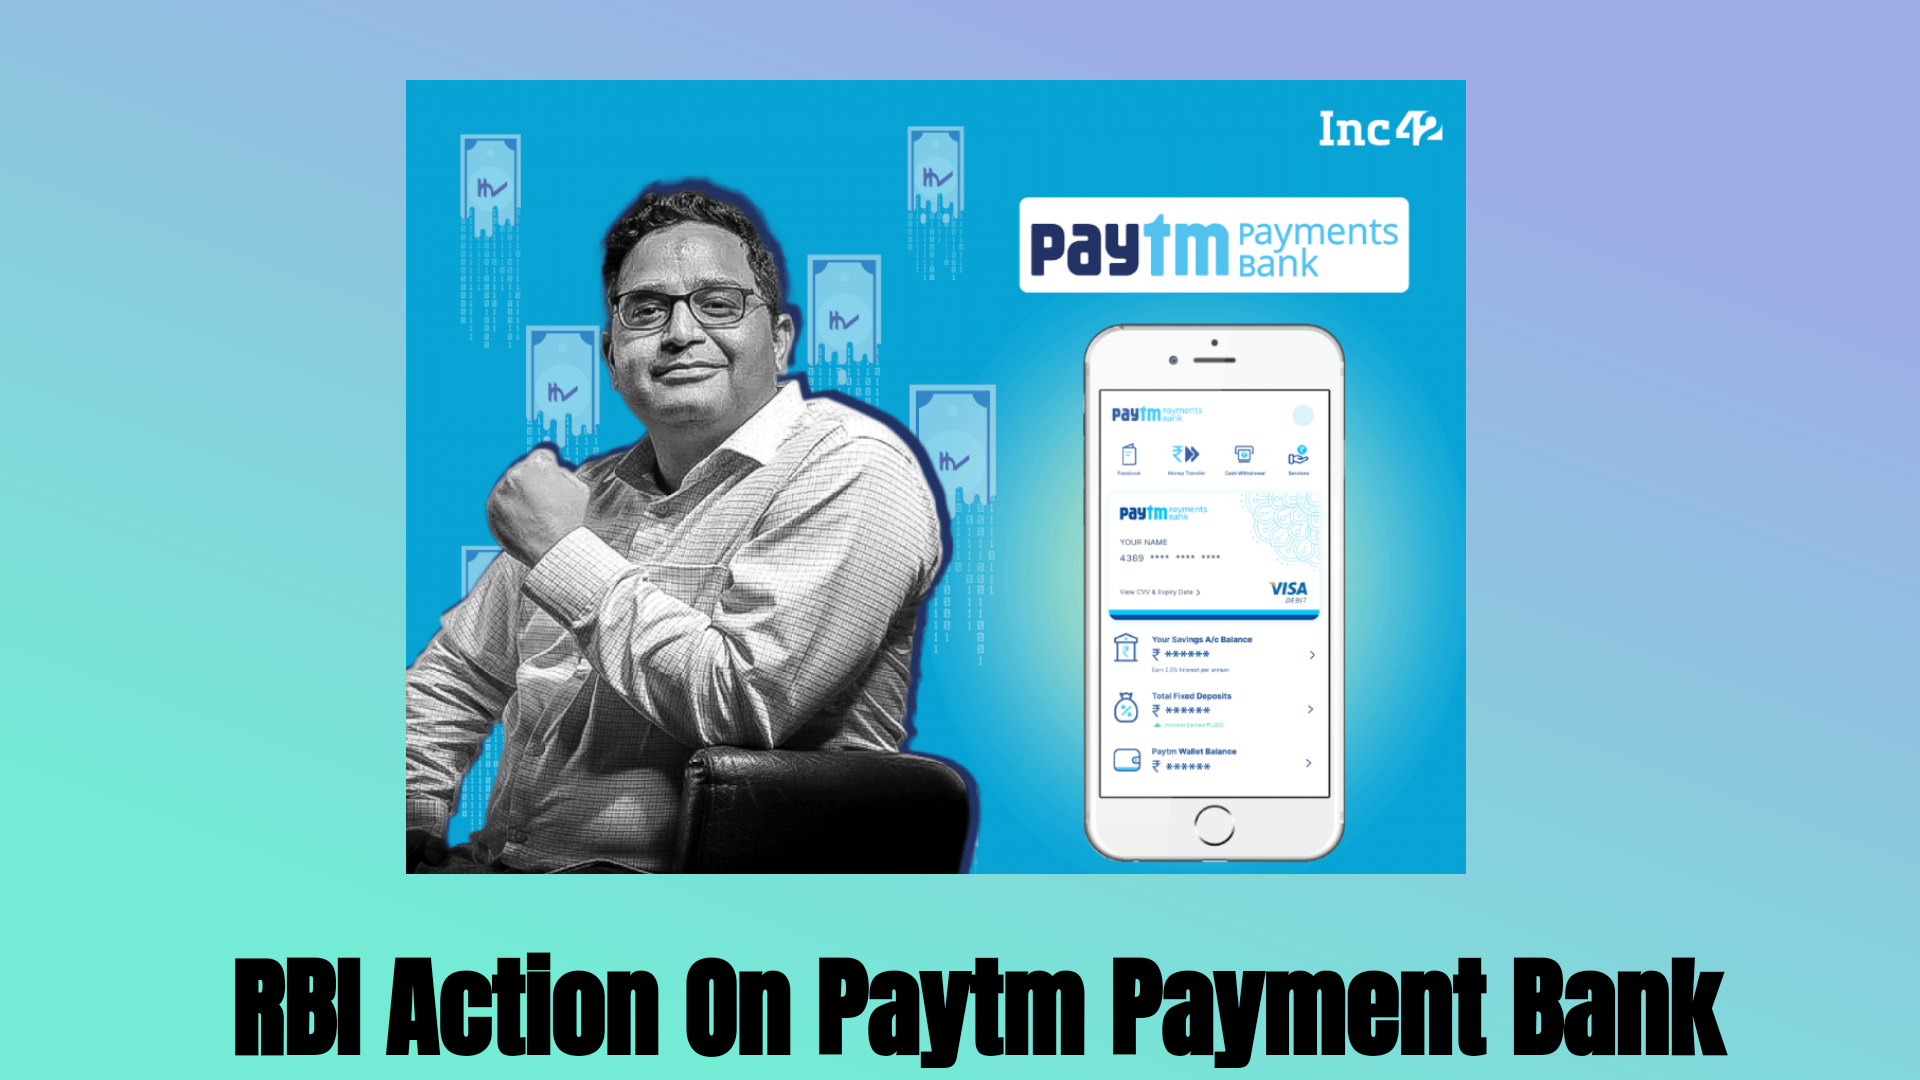 RBI ने paytm payments bank पर लिया एक्शन